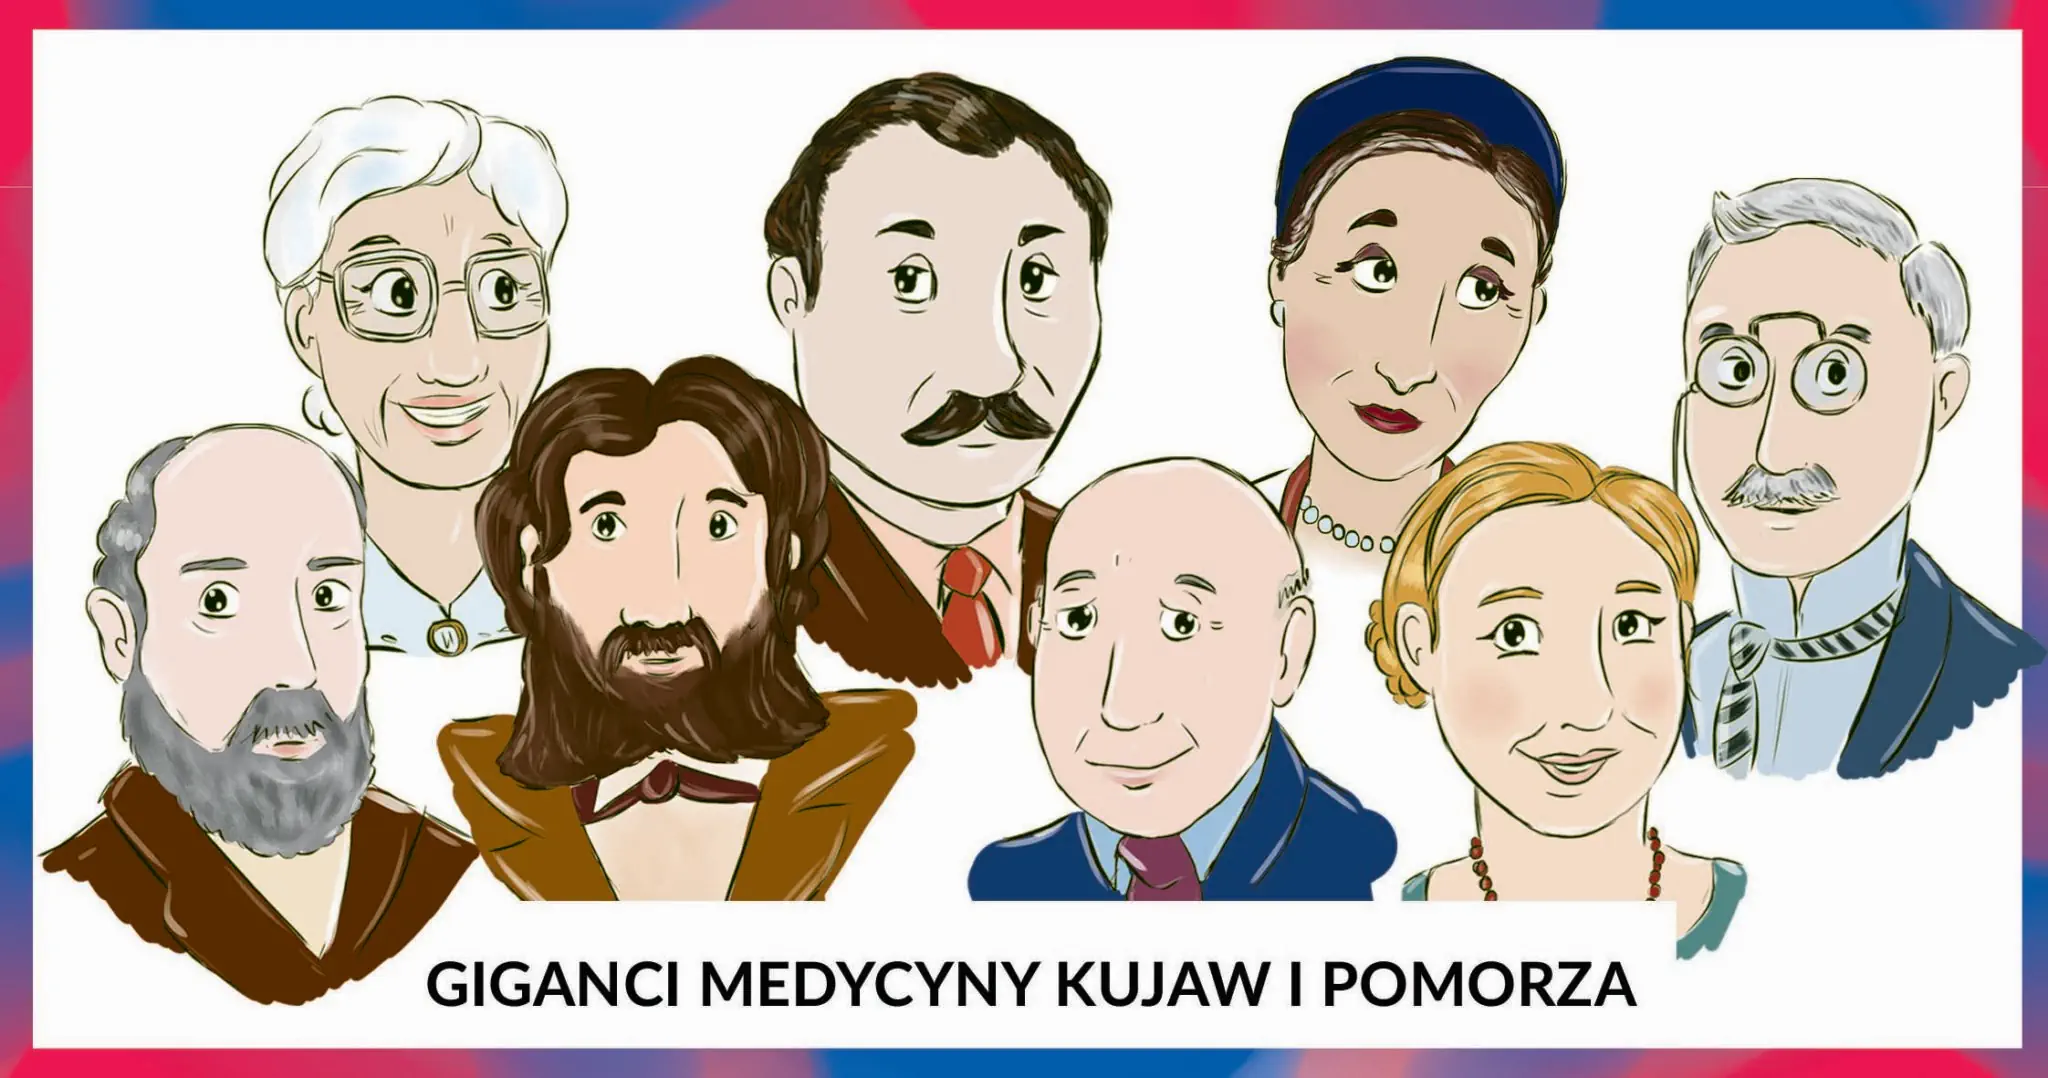 Baner "Giganci Medycyny Kujaw i Pomorza" to osiem postaci: 2 kobiety i 5 mężczyzn ubranych elegancko.